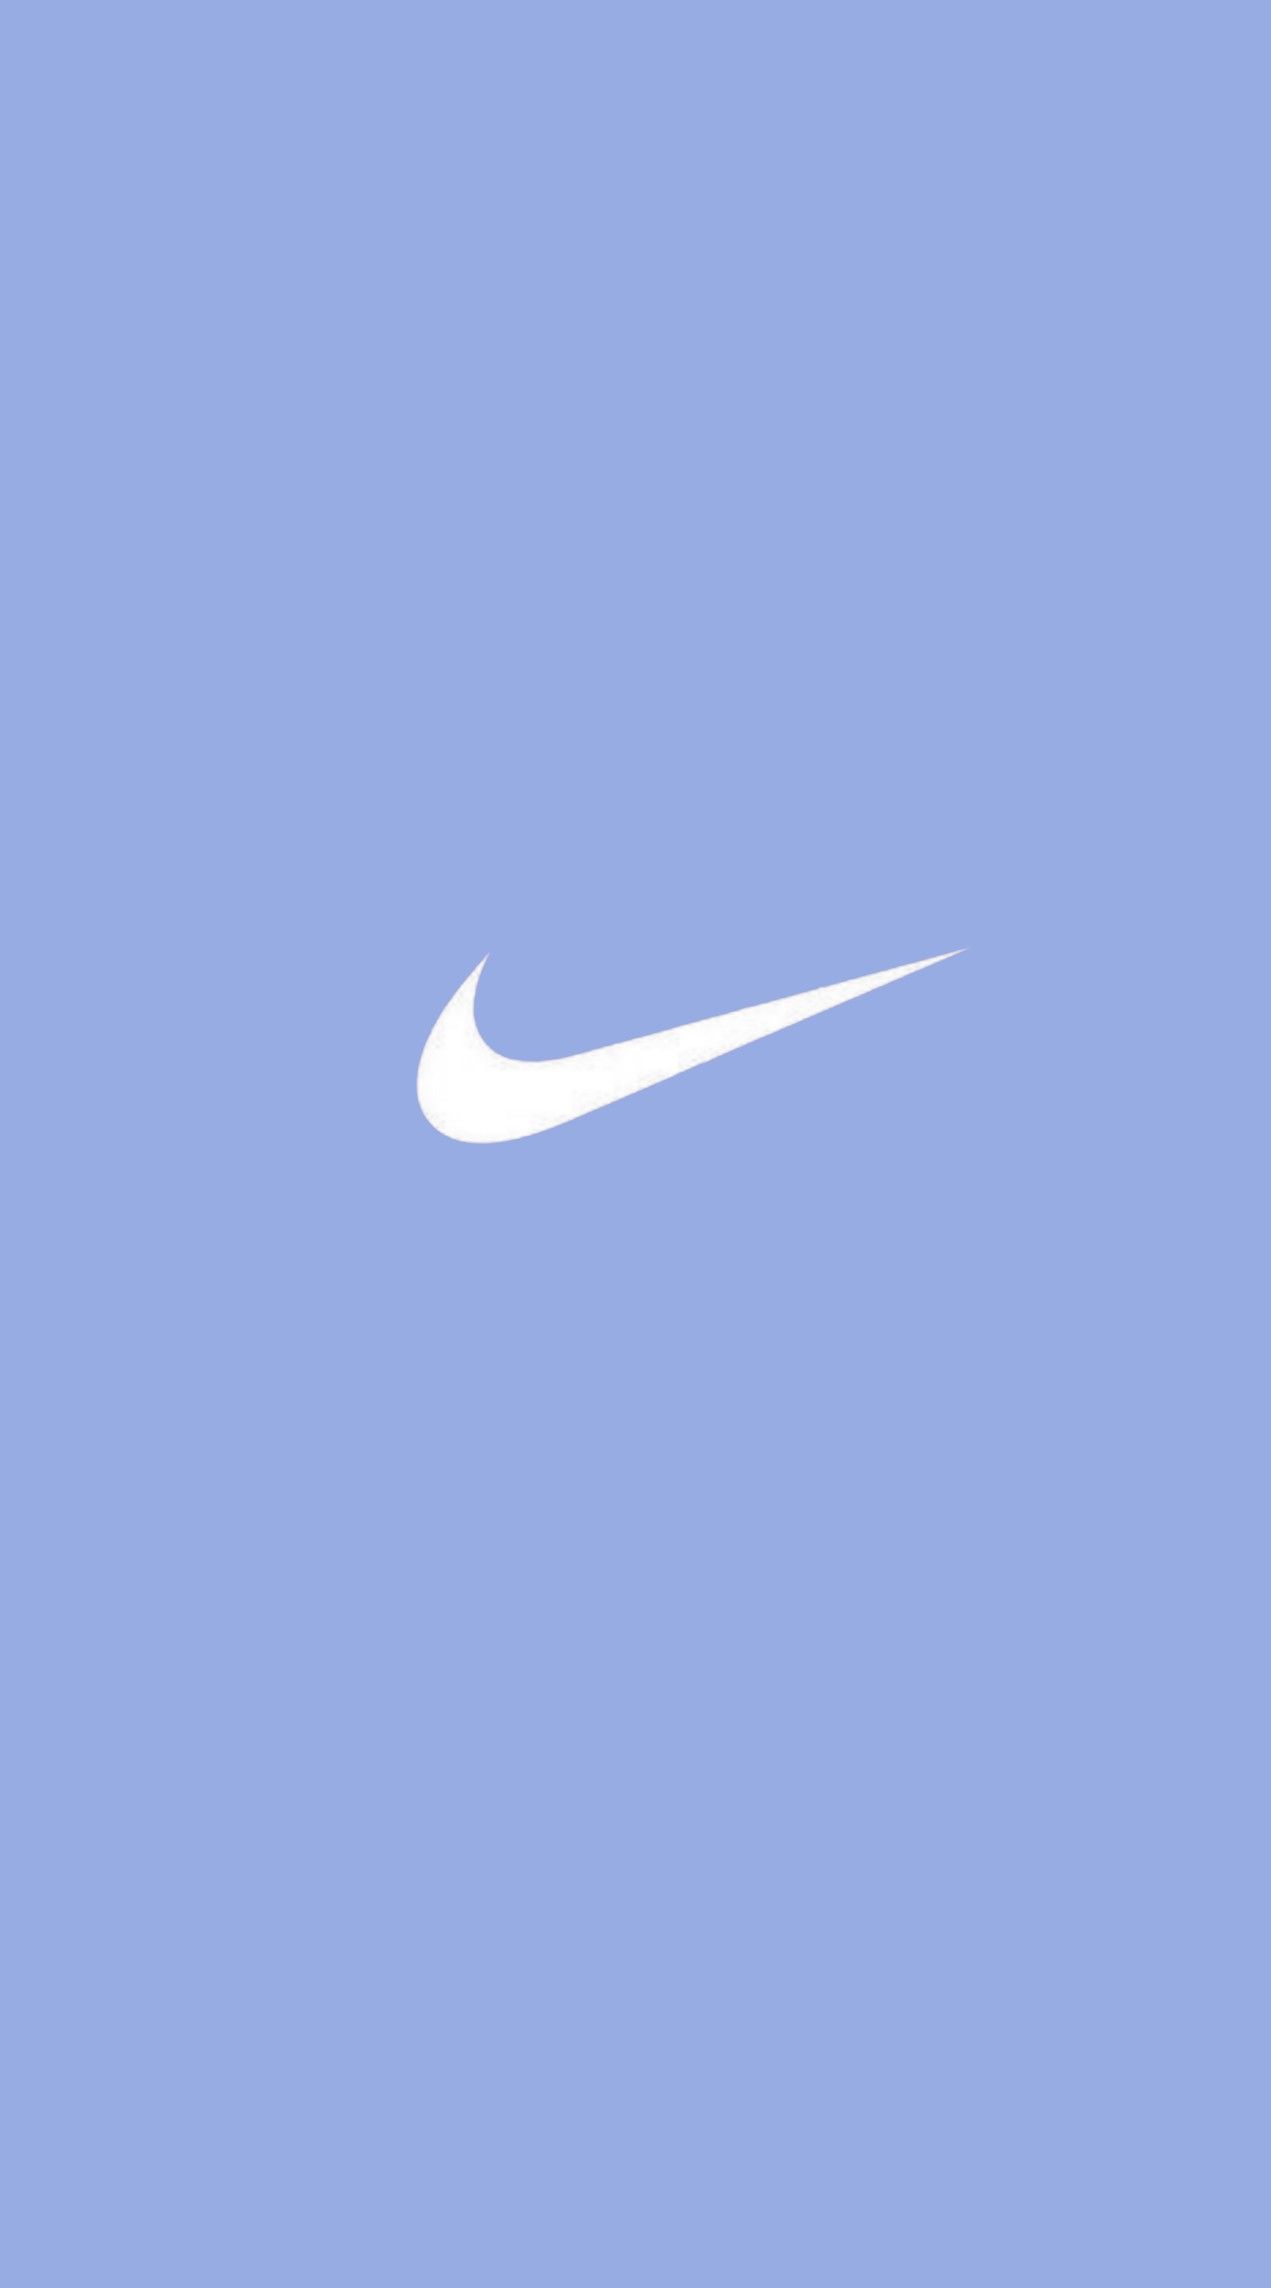 Nike wallpaper. Fondos de pantalla HD para iphone, Fondos de pantalla de iphone, Fondos de pantalla nike